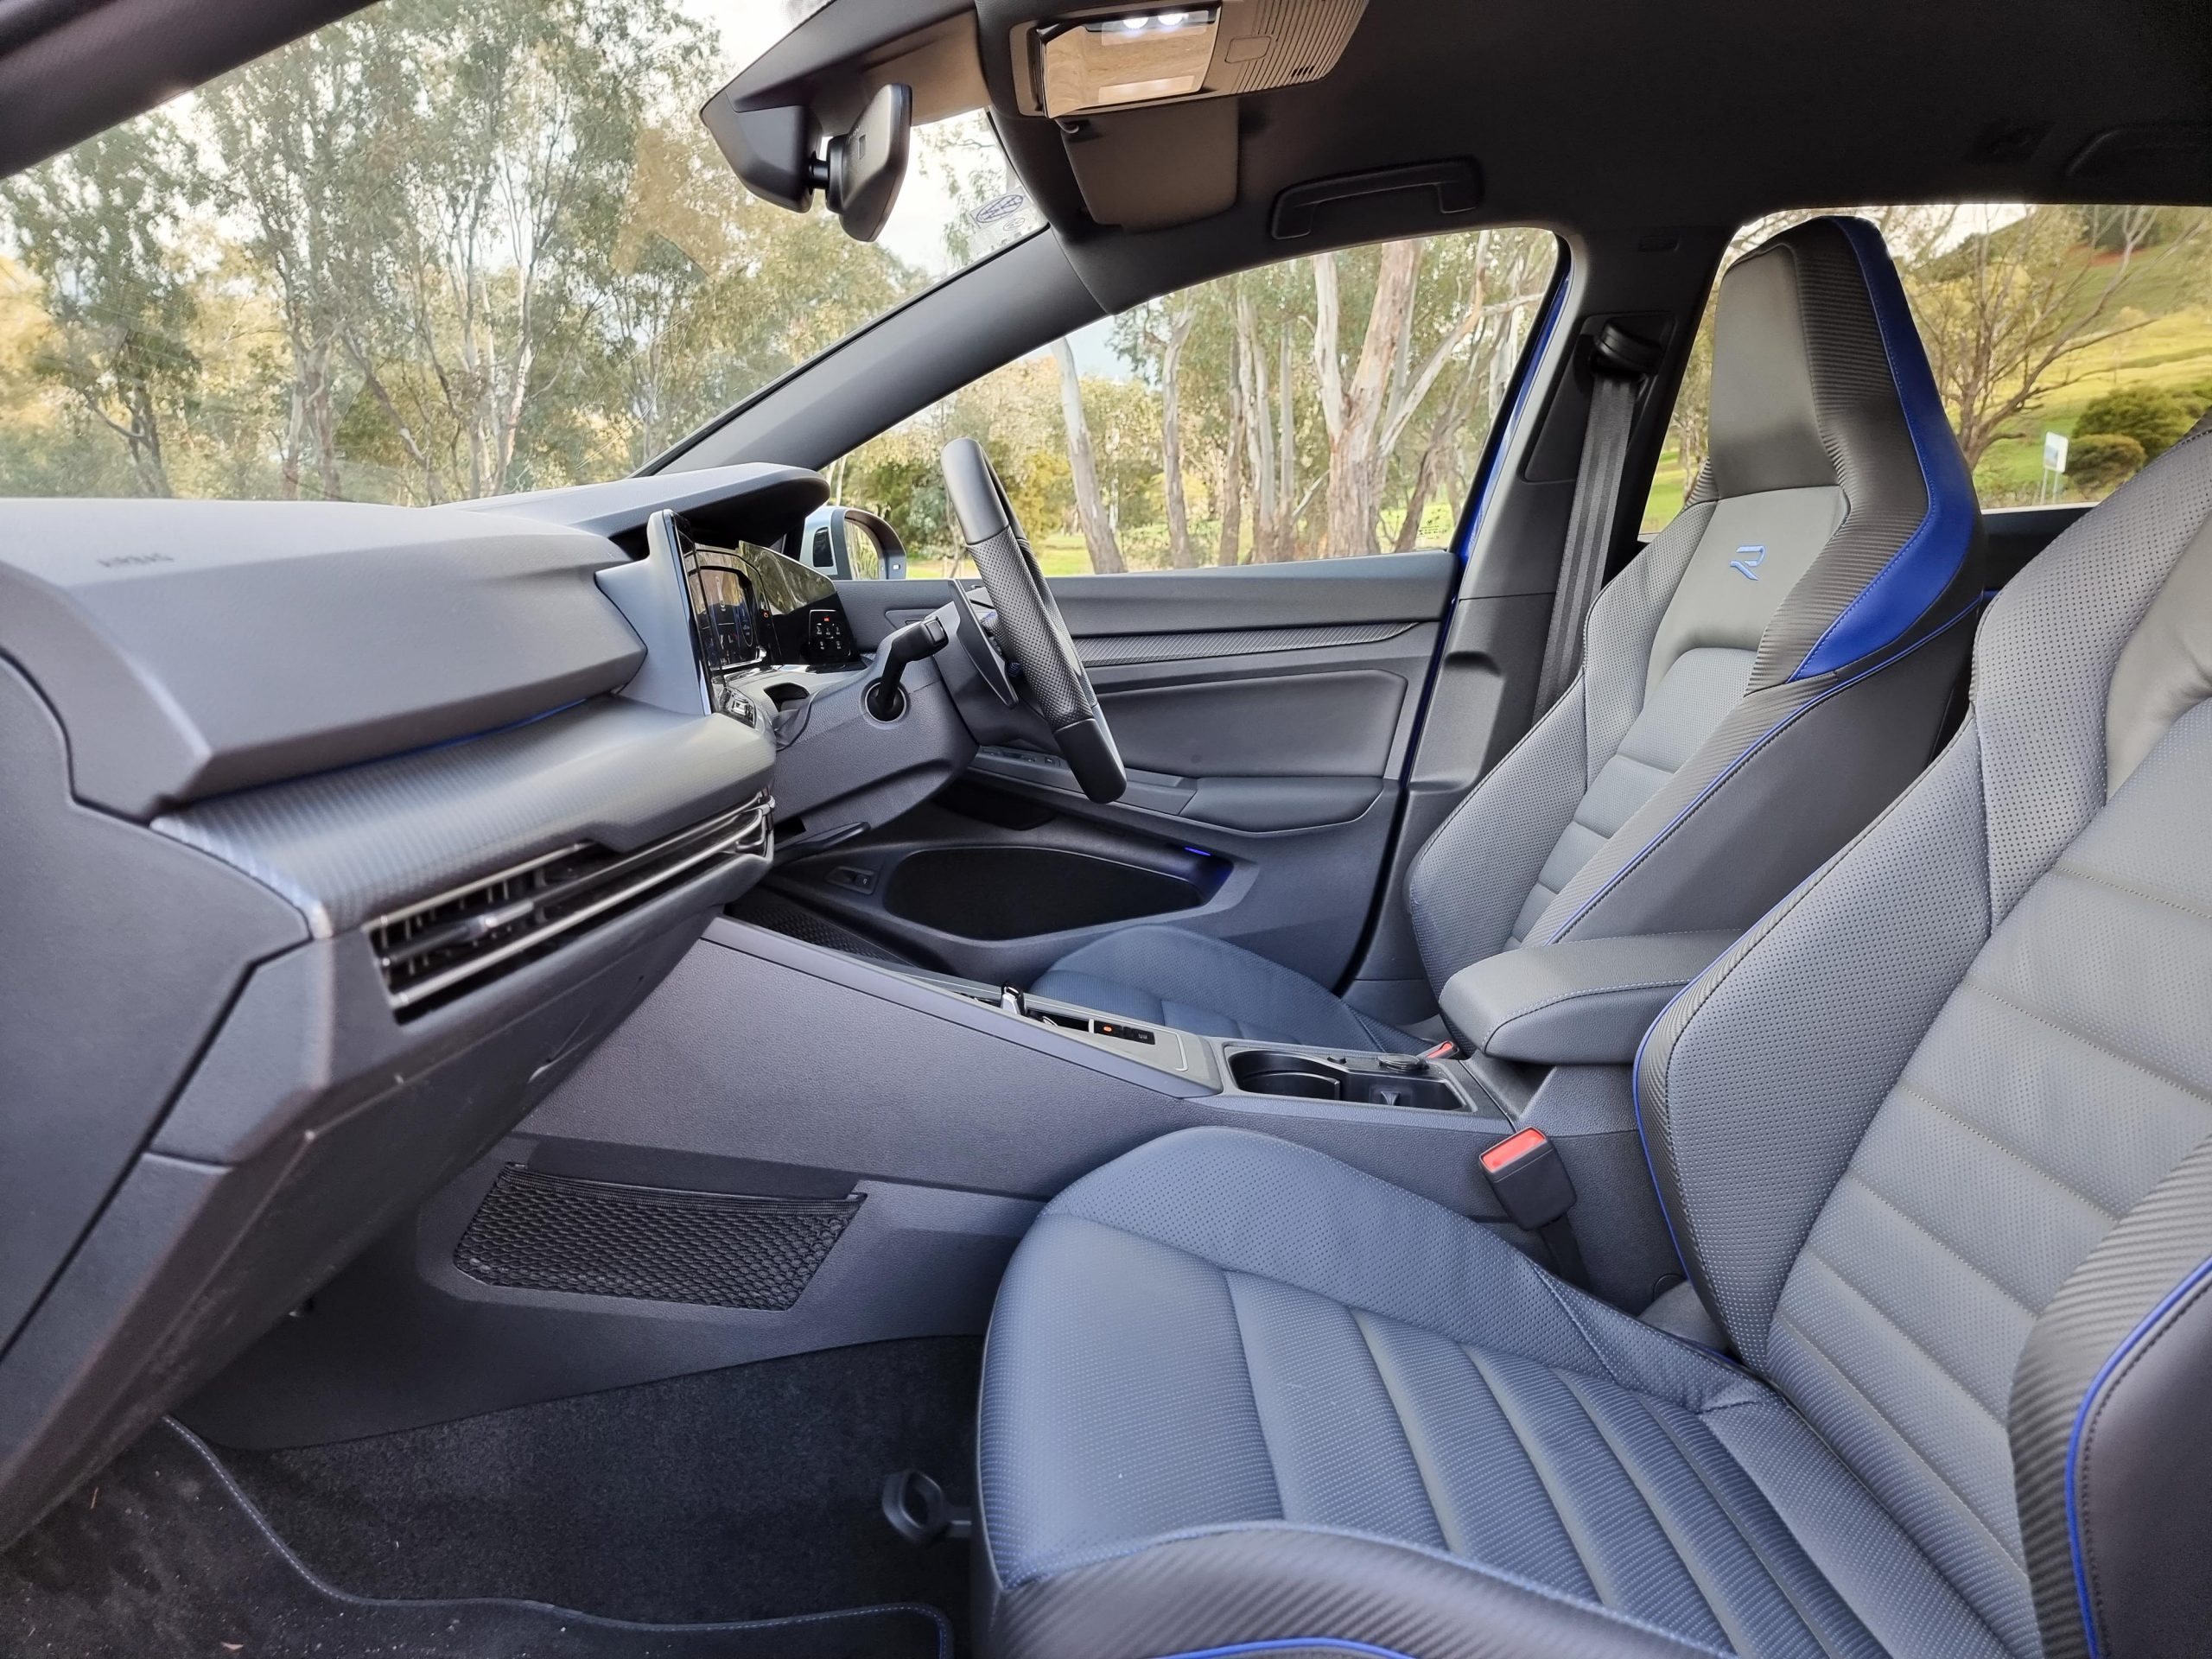 2022 VW Golf R Wagon interior